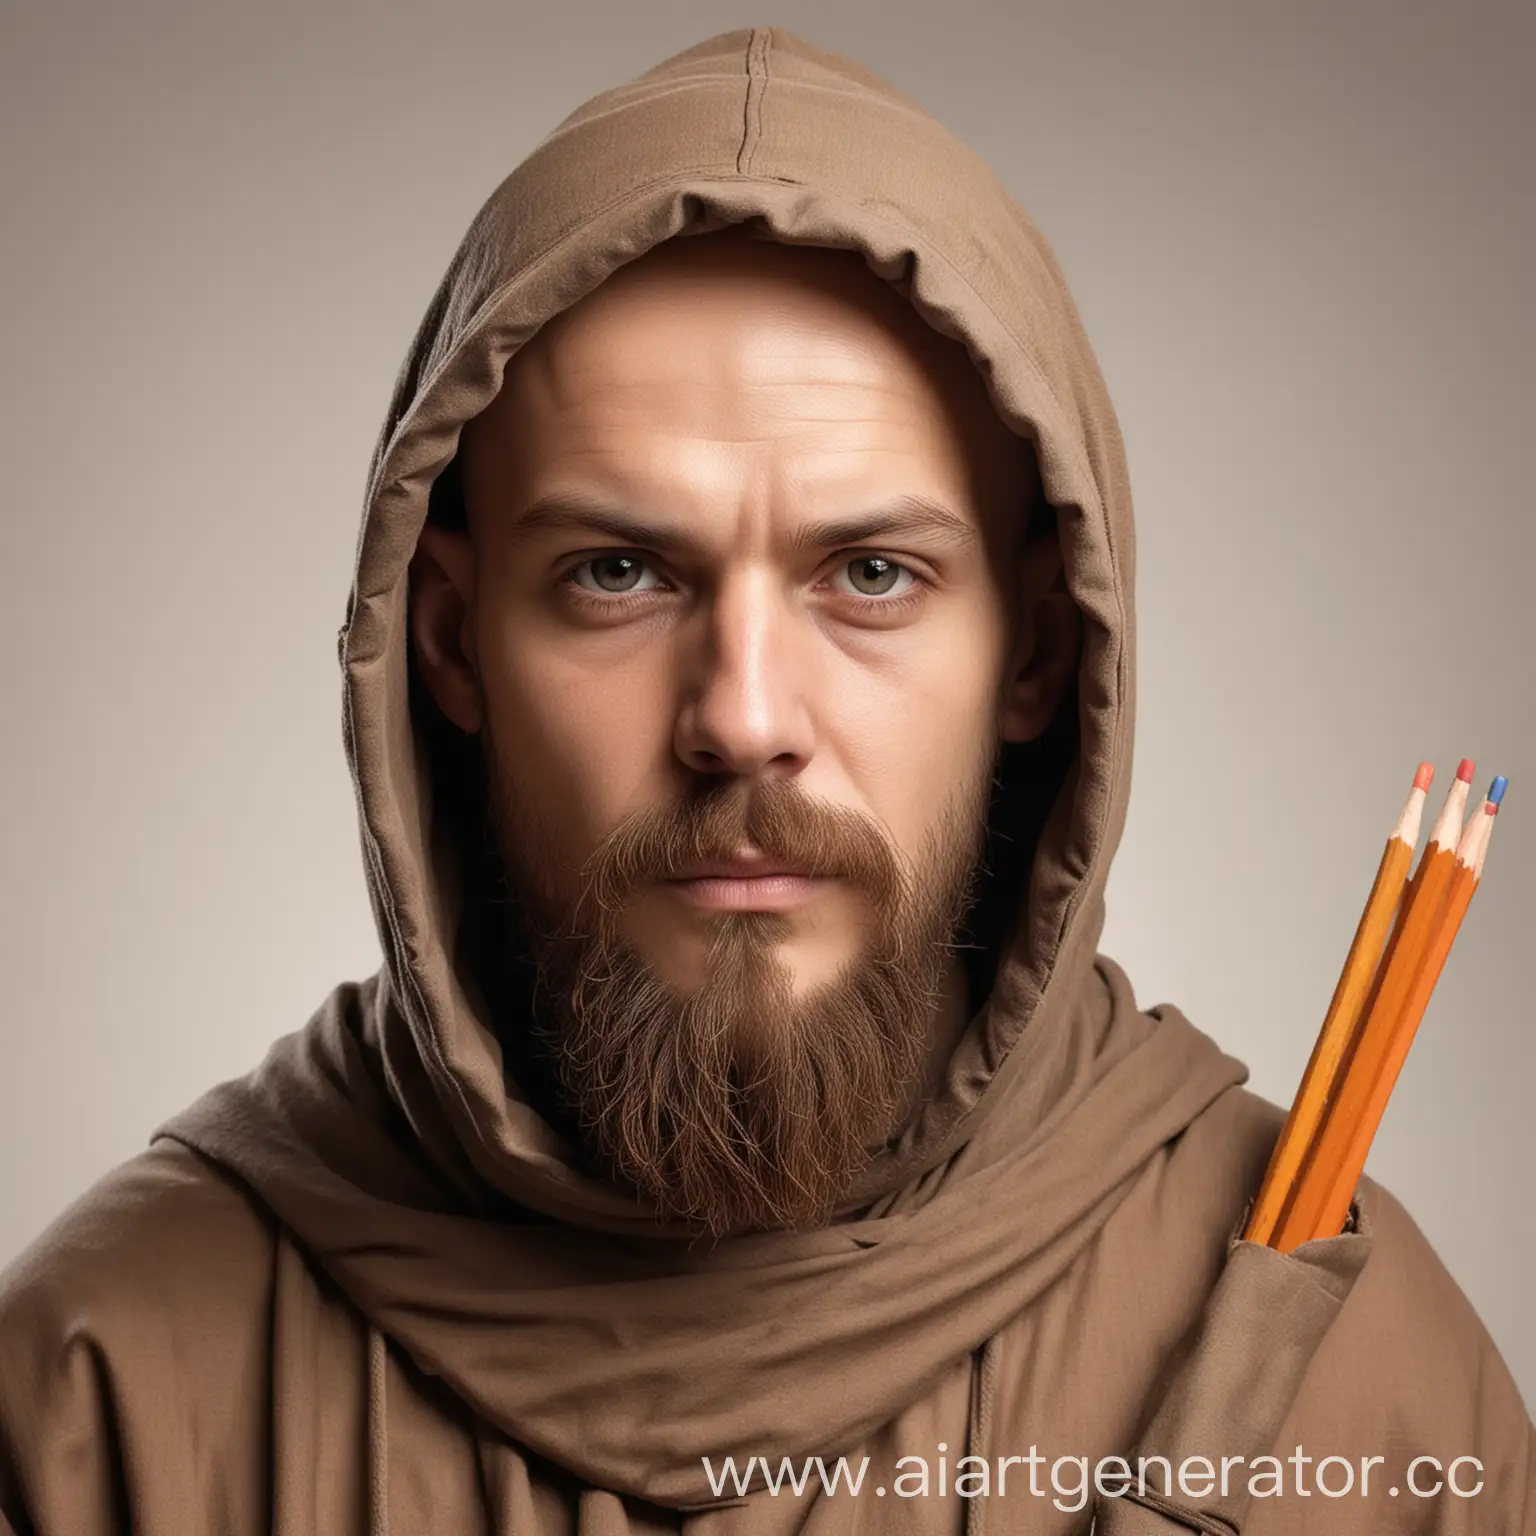 Лицо монаха в капюшоне, лицо нейтральное, борода усы, лысый, в руках карандаши, на светлом фоне